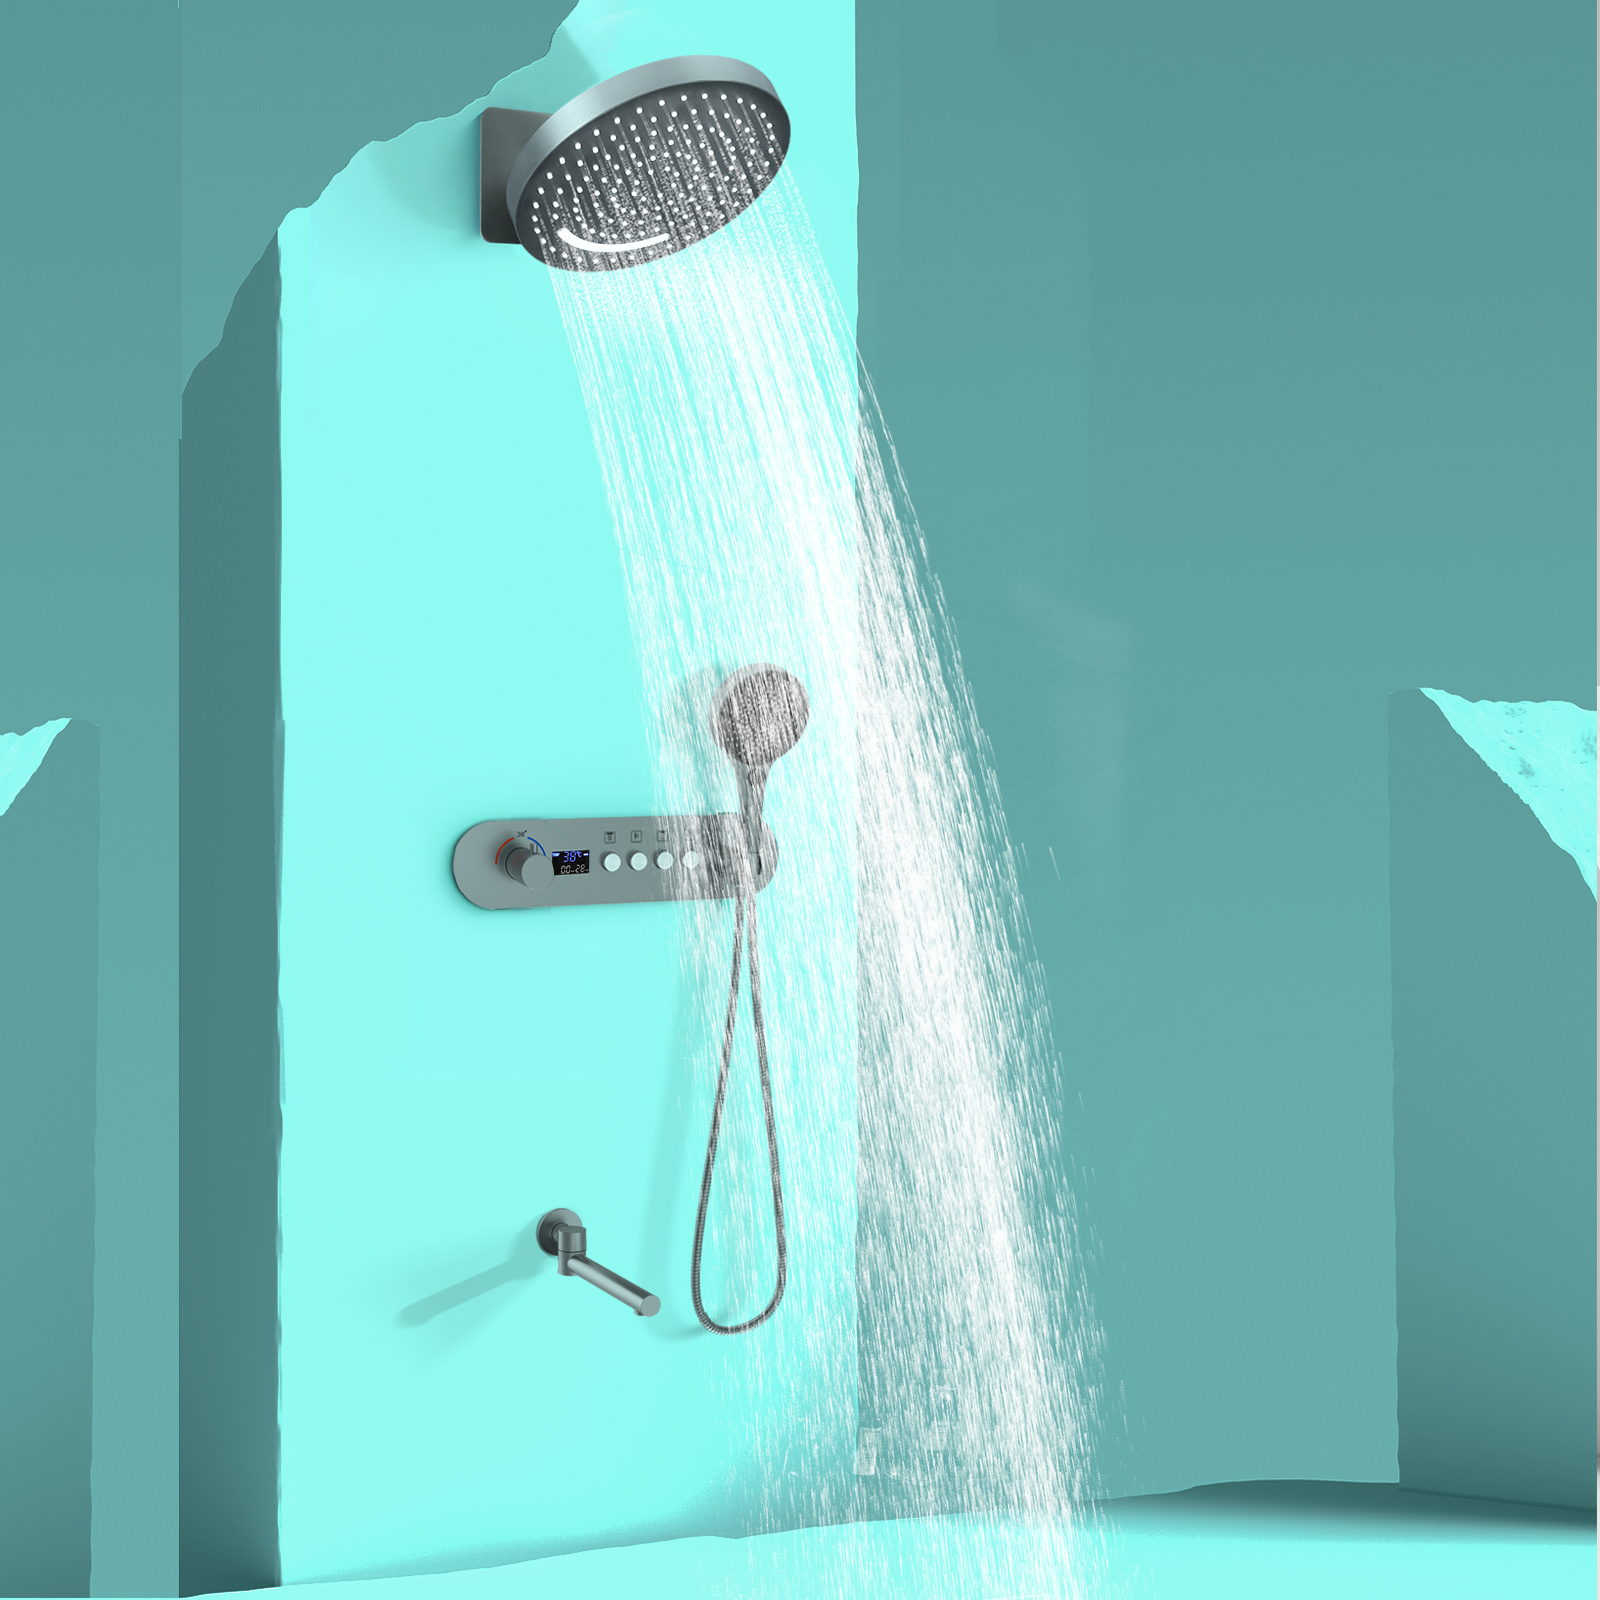 Bathroom Wall -mounted Shower Panel System Bronze Shower Number Showed 4 Function Shower Kit